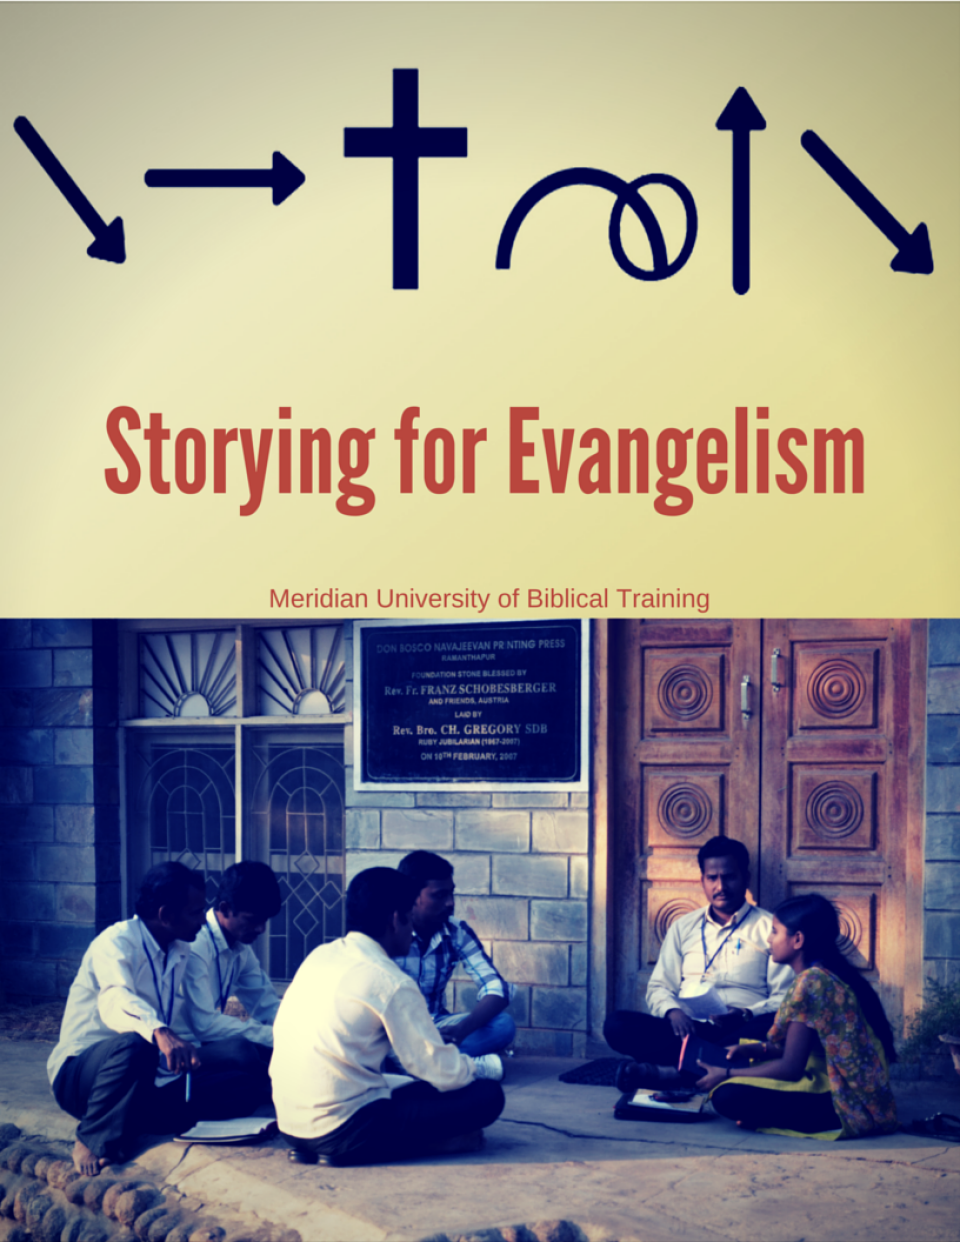 Bible Storying for Evangelism Workshop